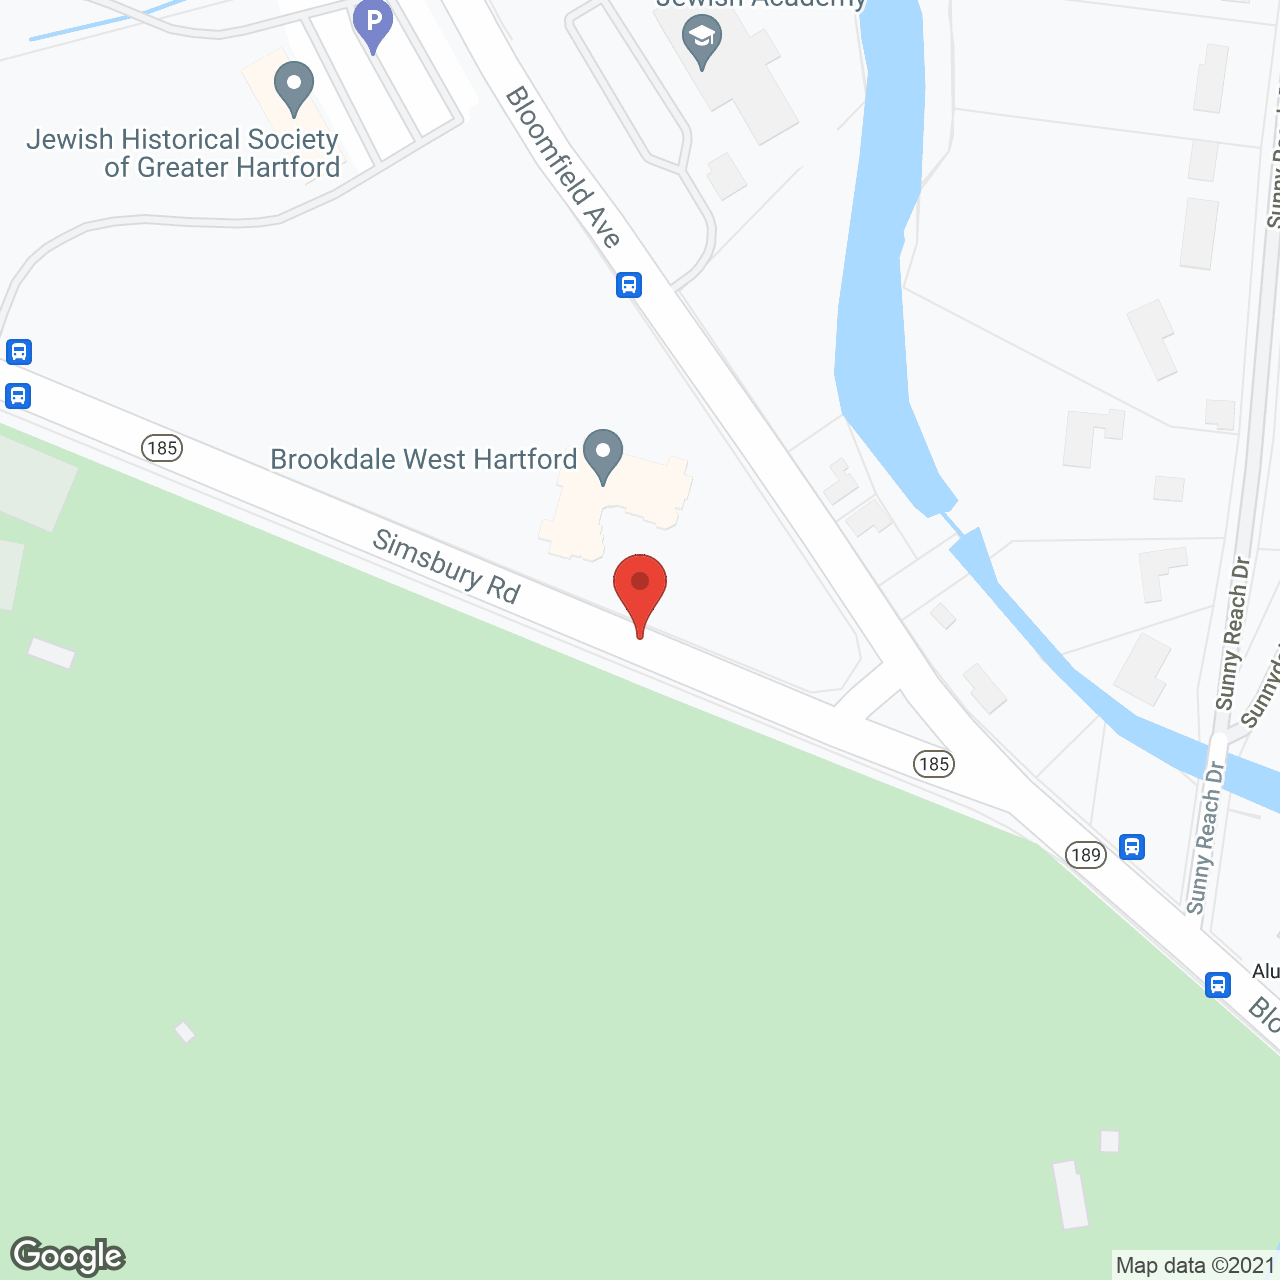 Brookdale West Hartford in google map